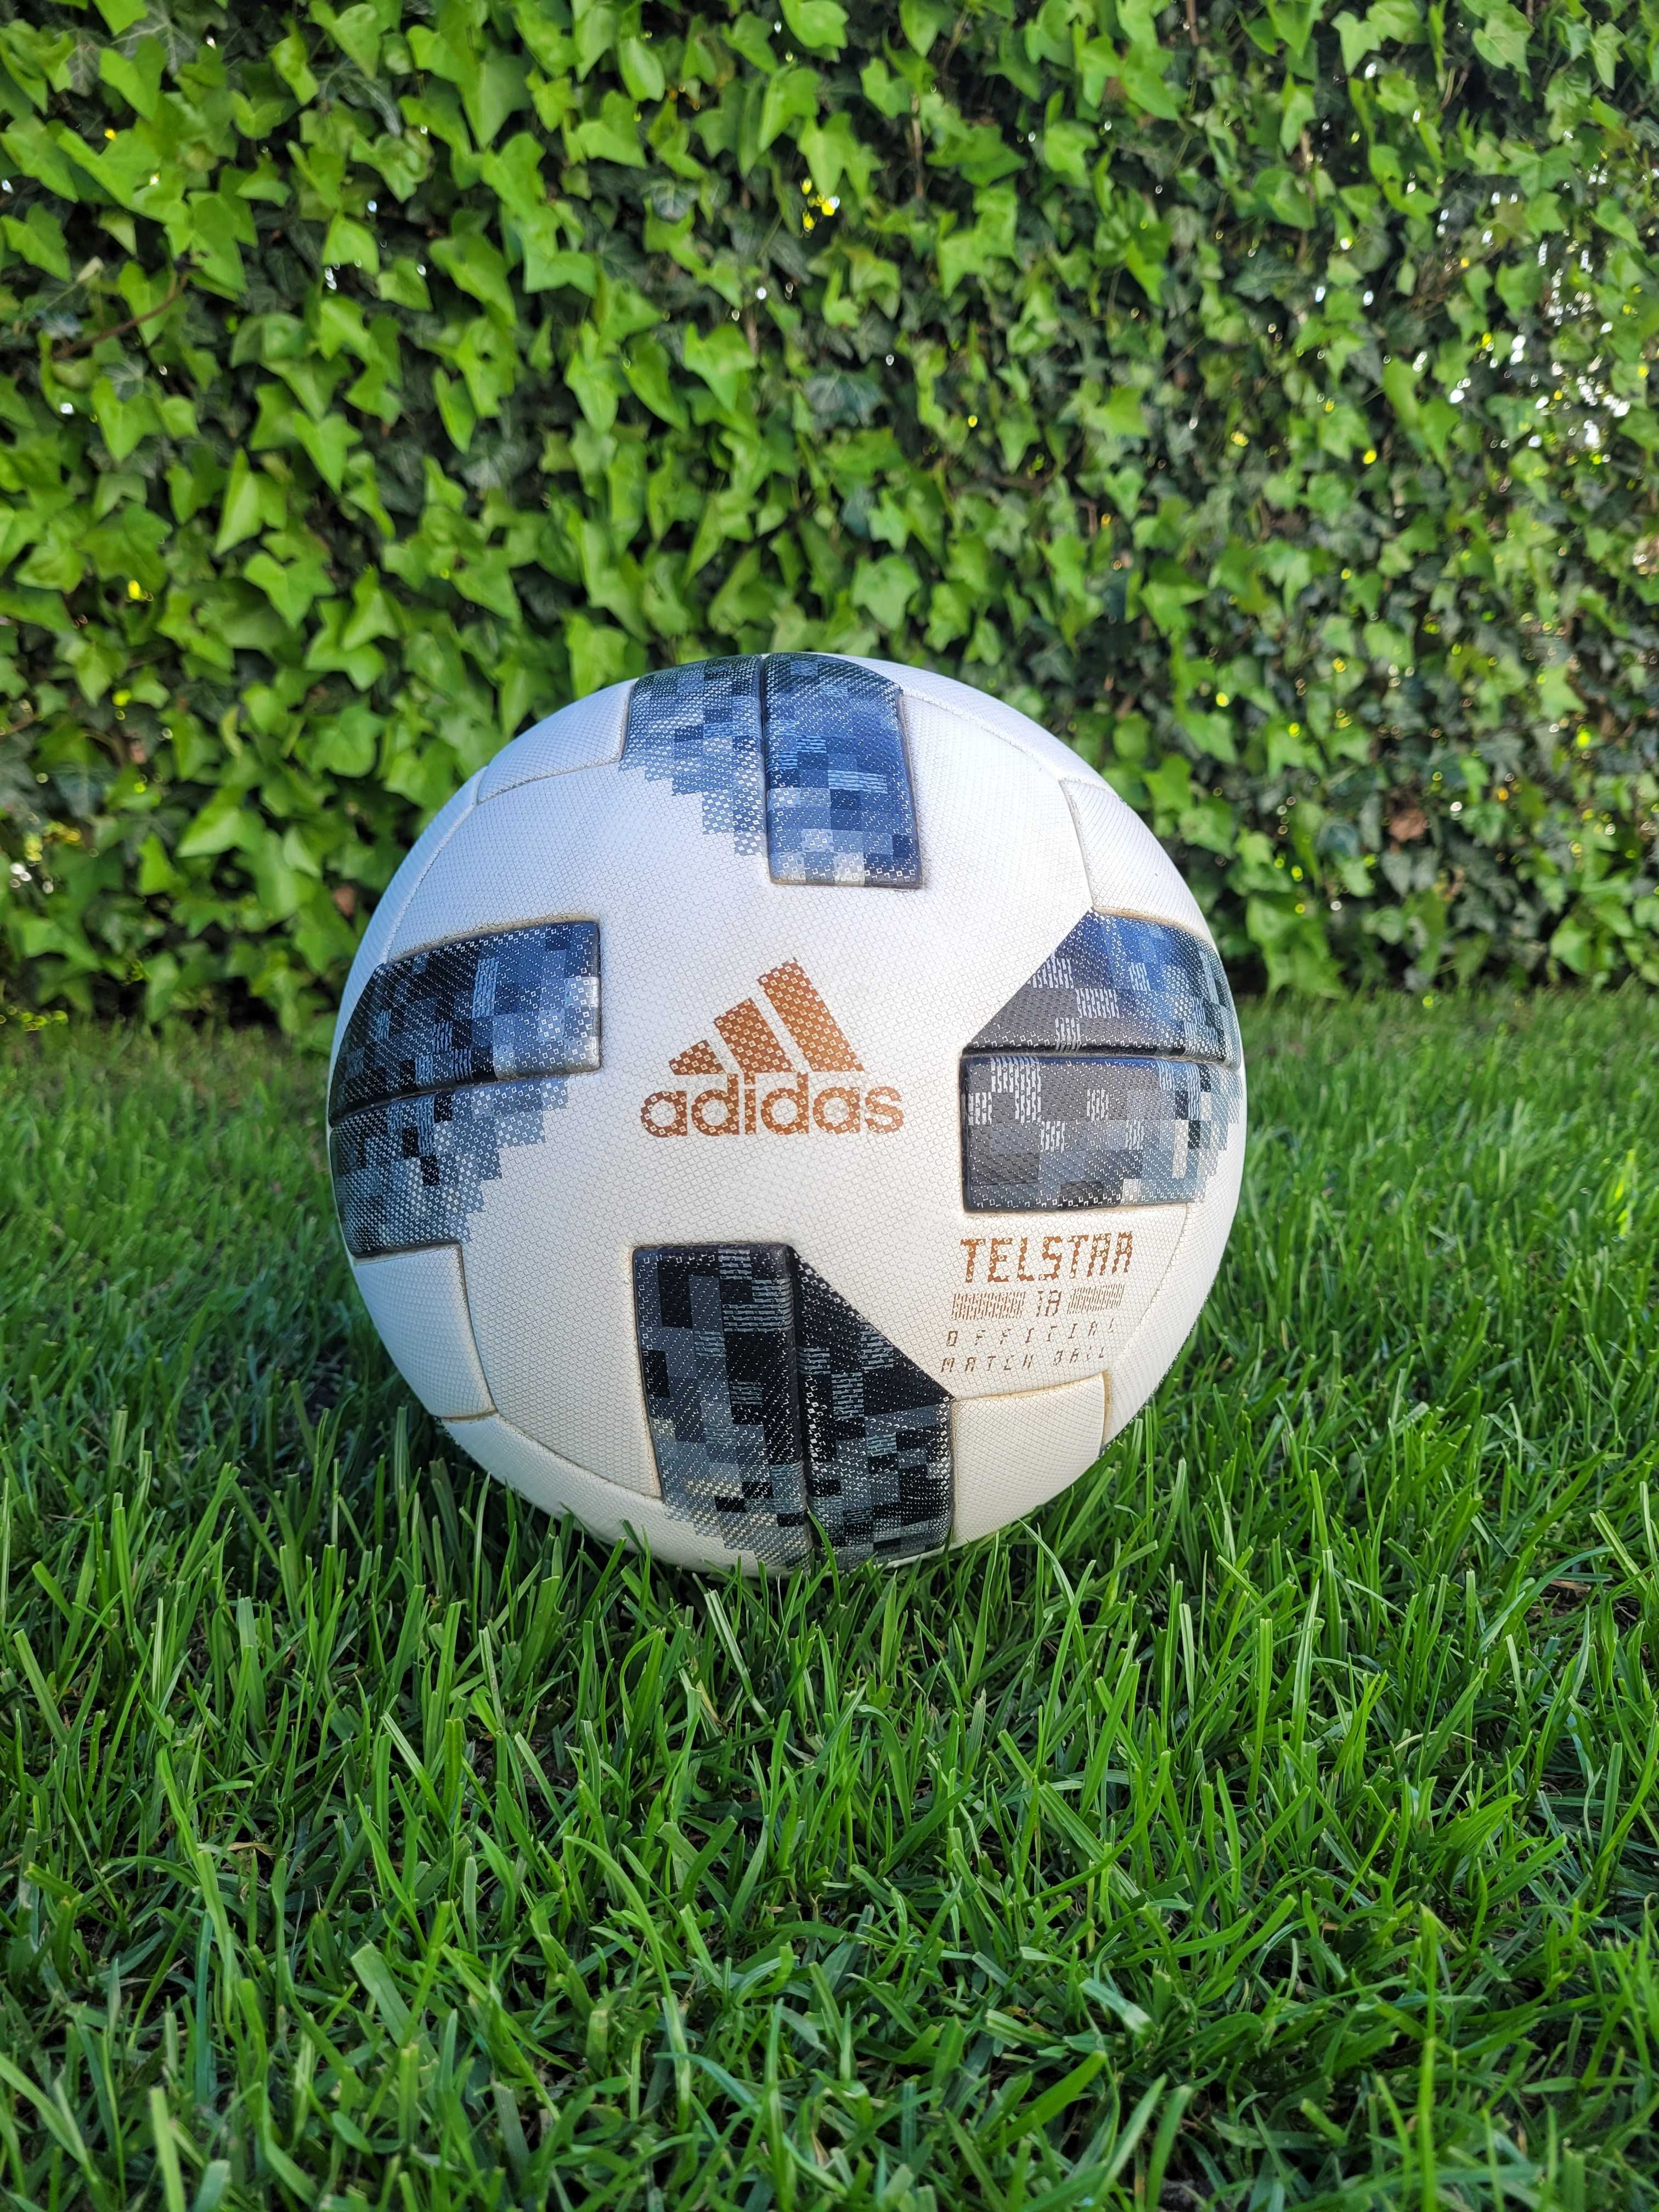 Piłka meczowa Adidas OMB Telstar 18 Official Match Ball